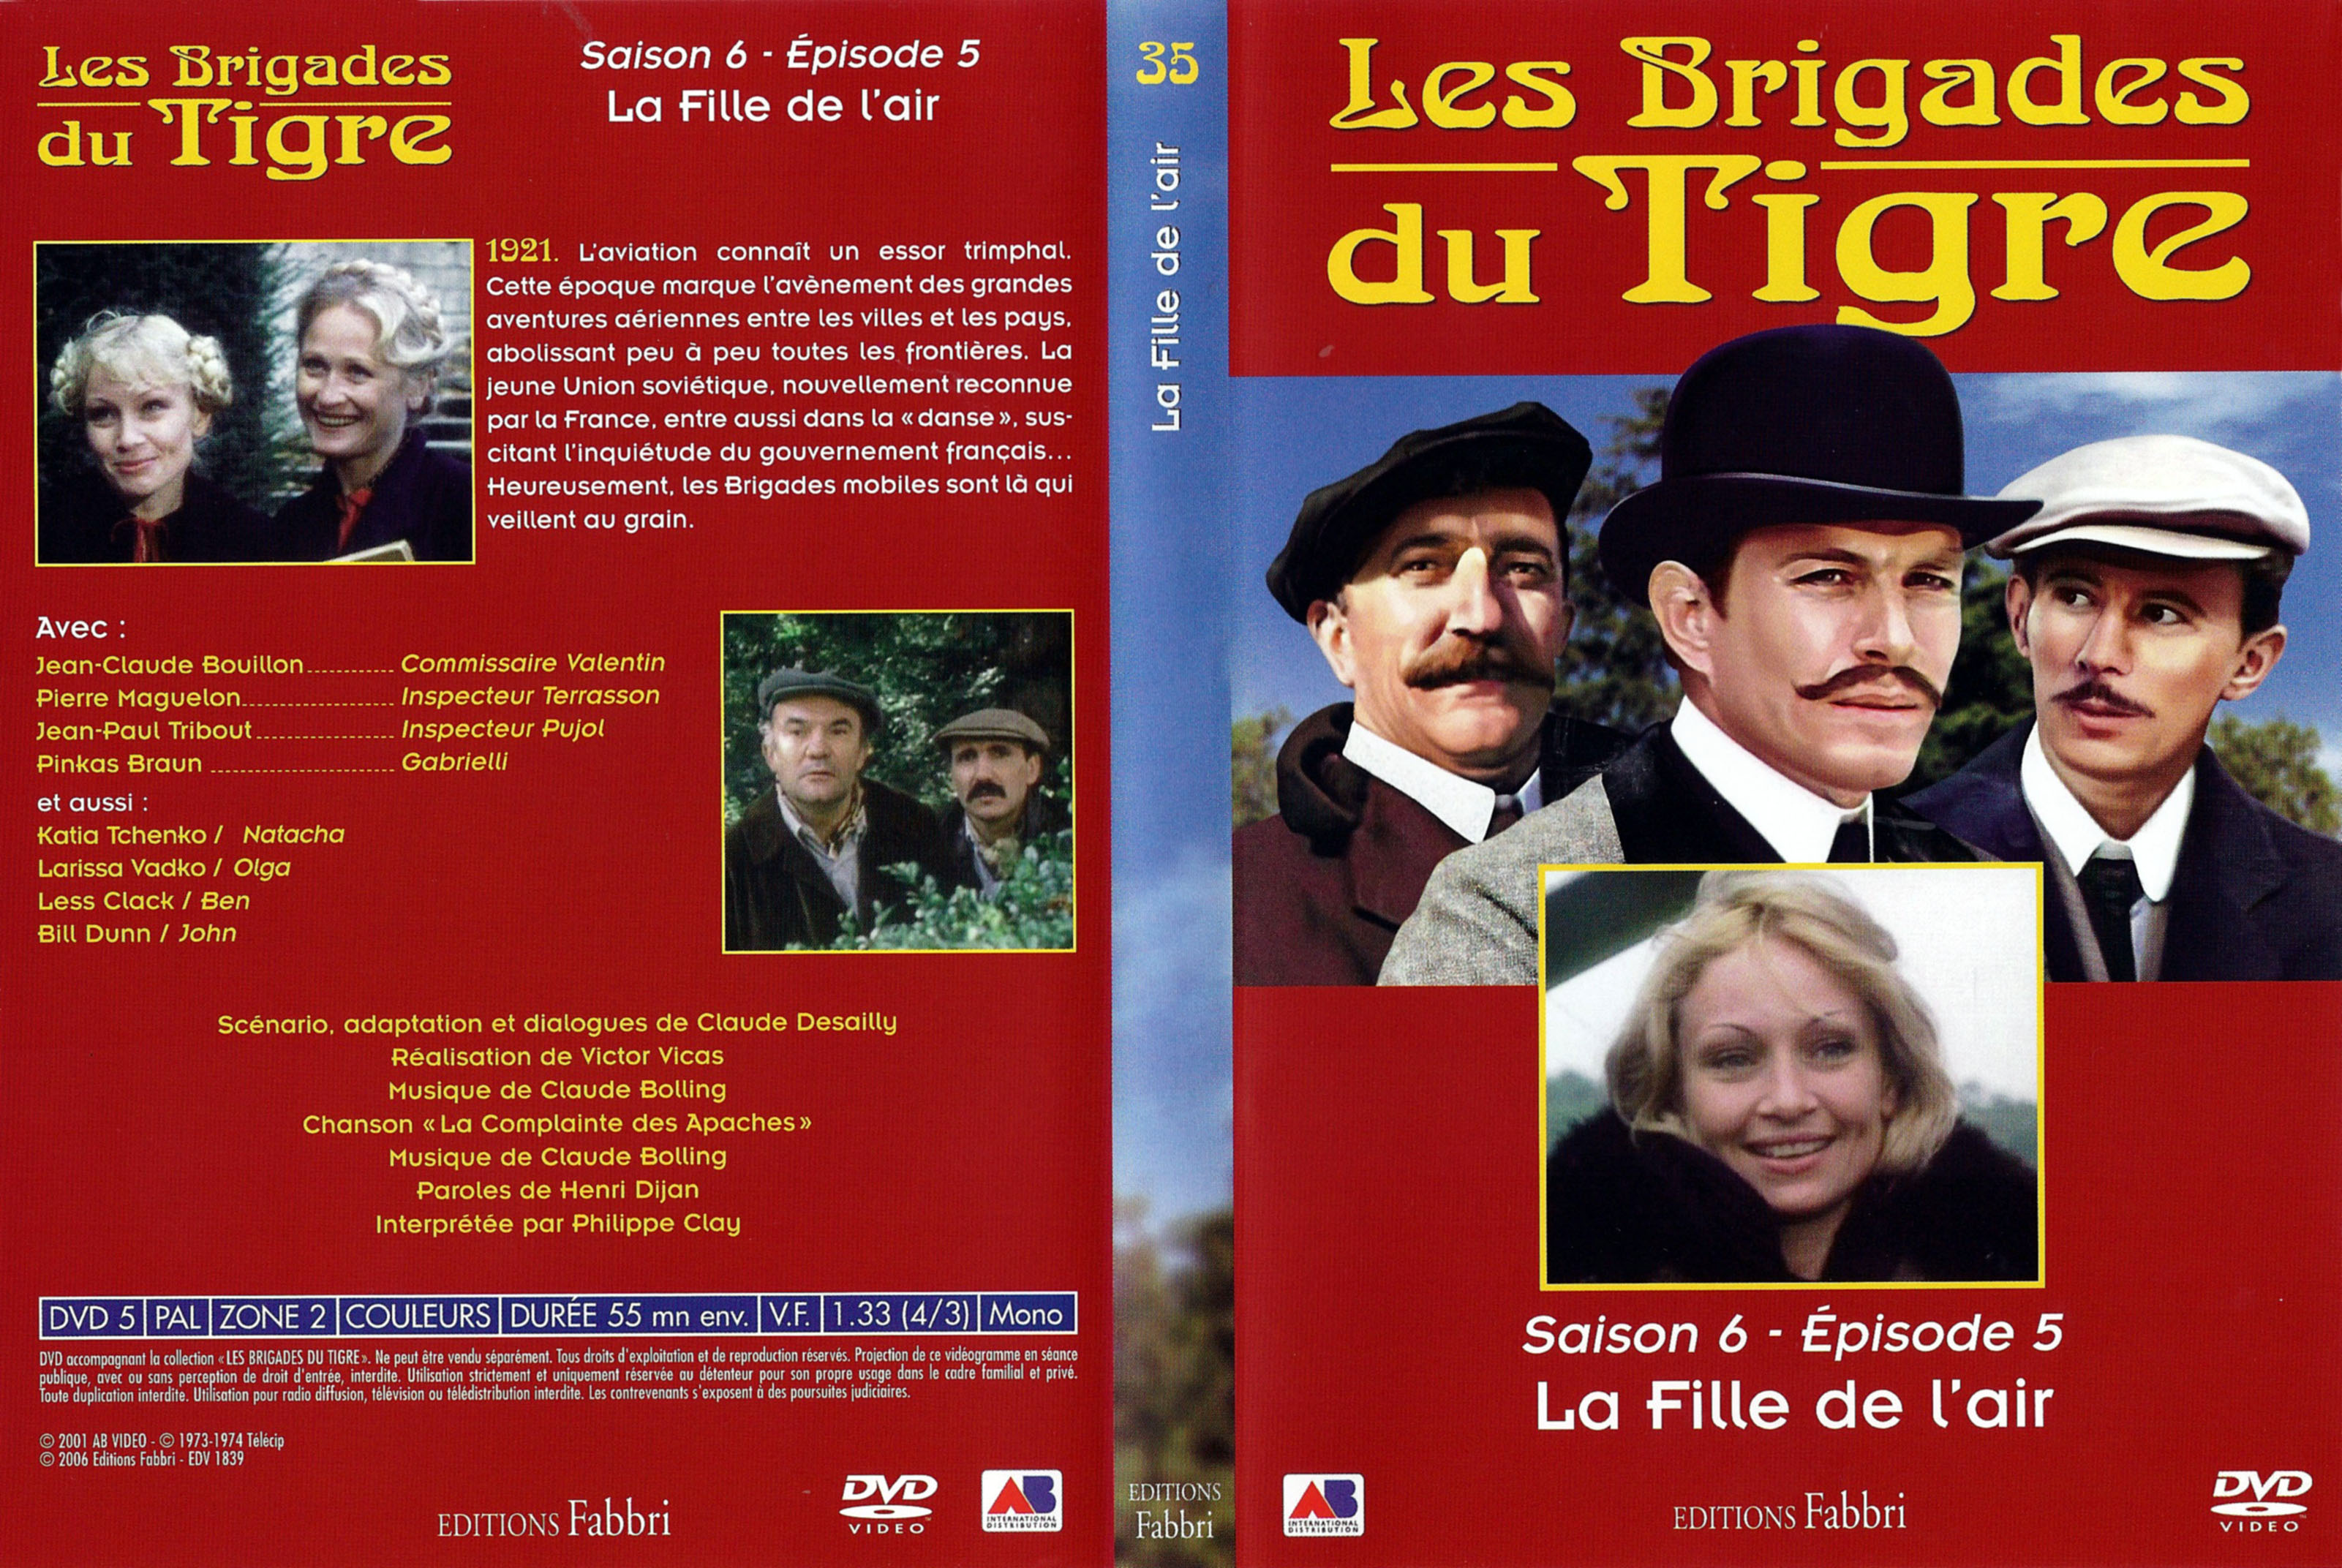 Jaquette DVD Les brigades du tigre saison 6 pisode 5